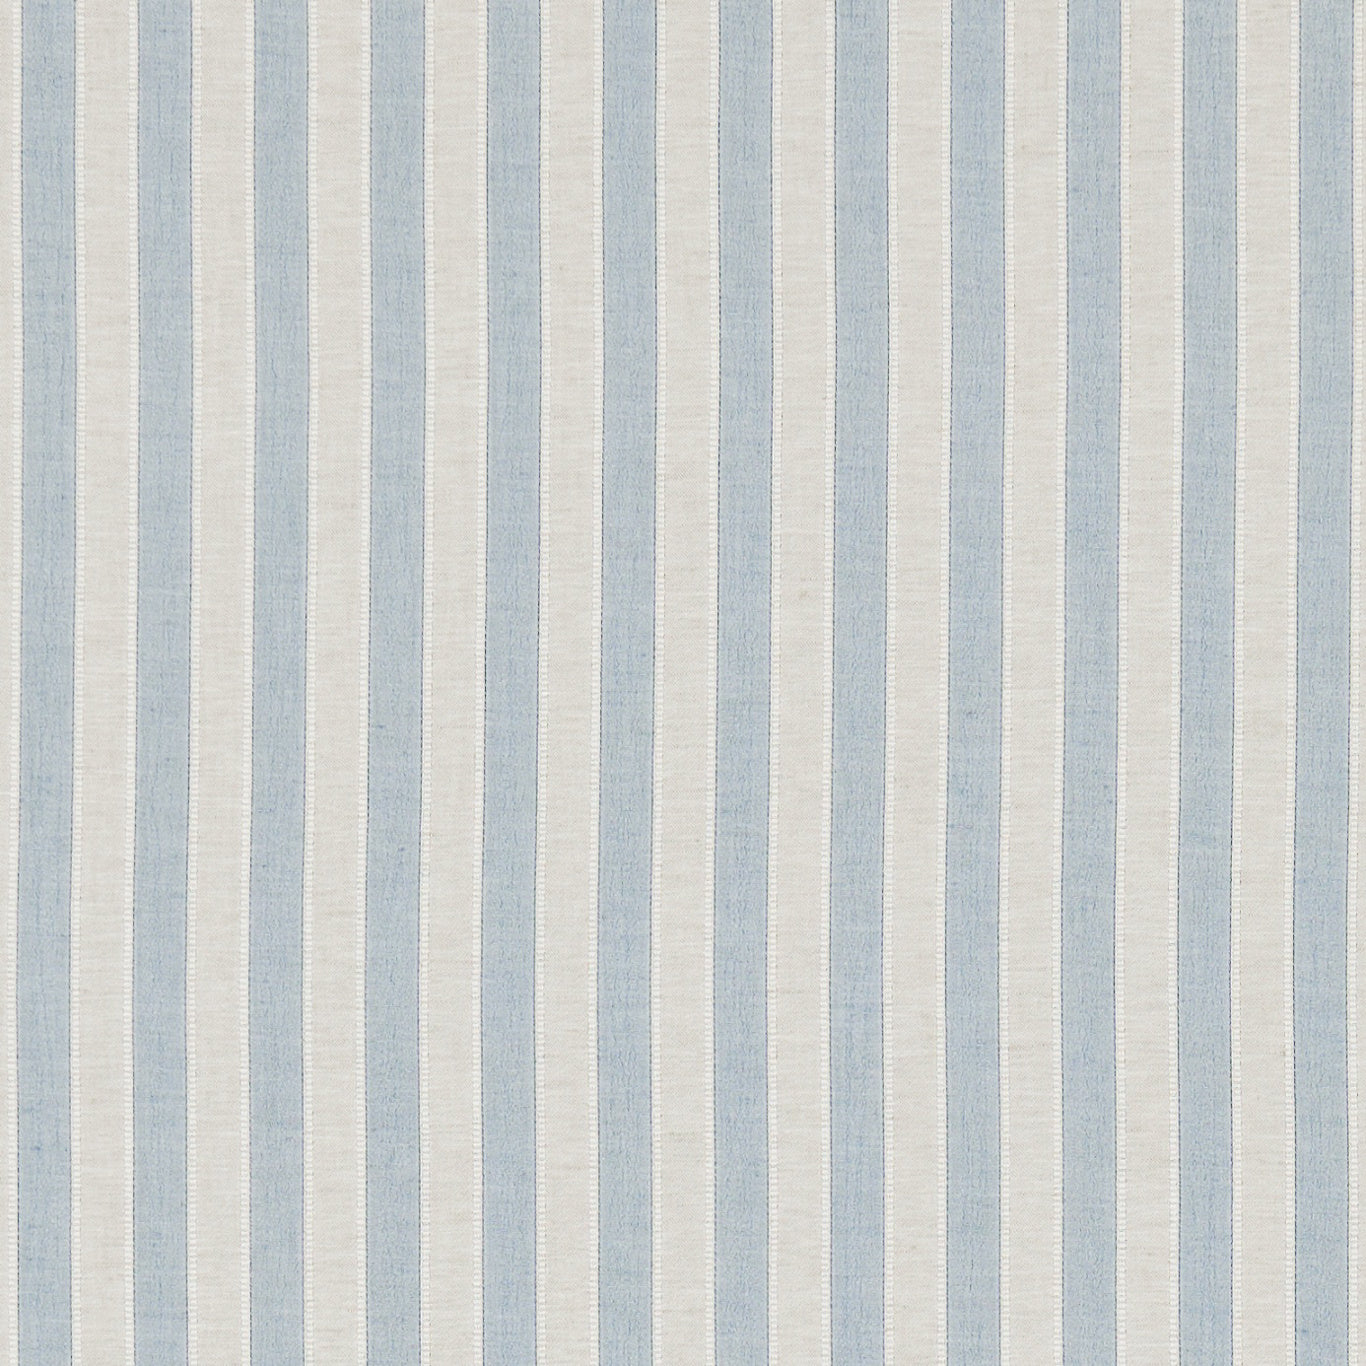 Sorilla Stripe Fabric by Sanderson